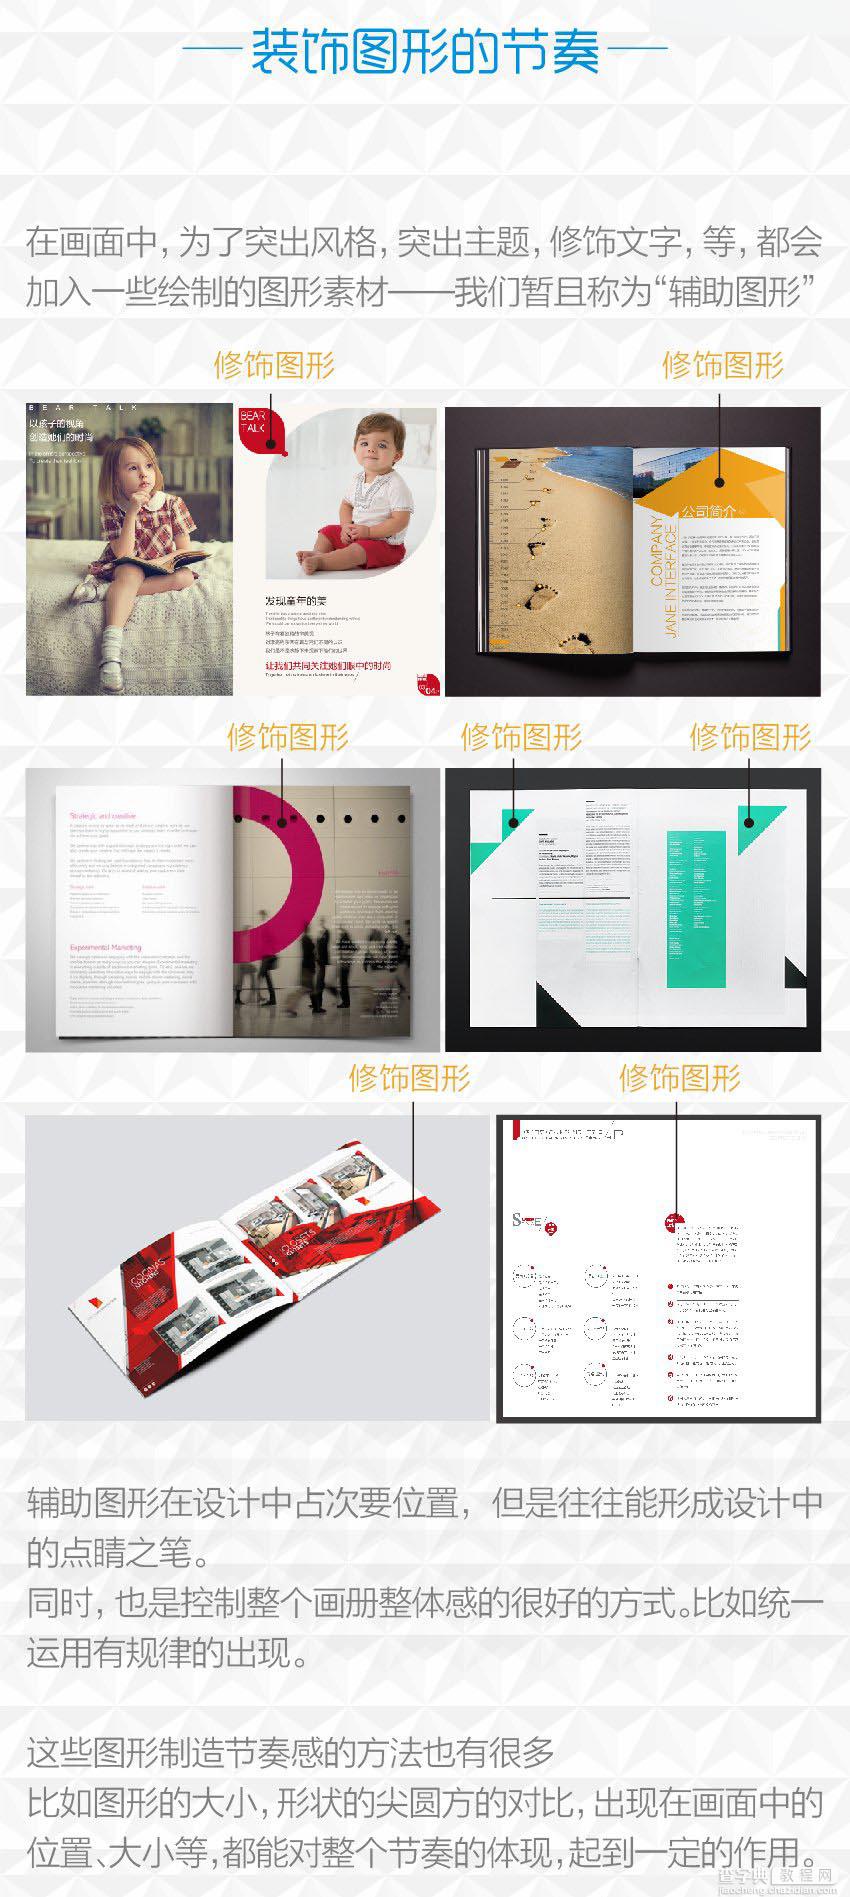 平面设计课堂:浅谈视觉设计中画册的设计手法6